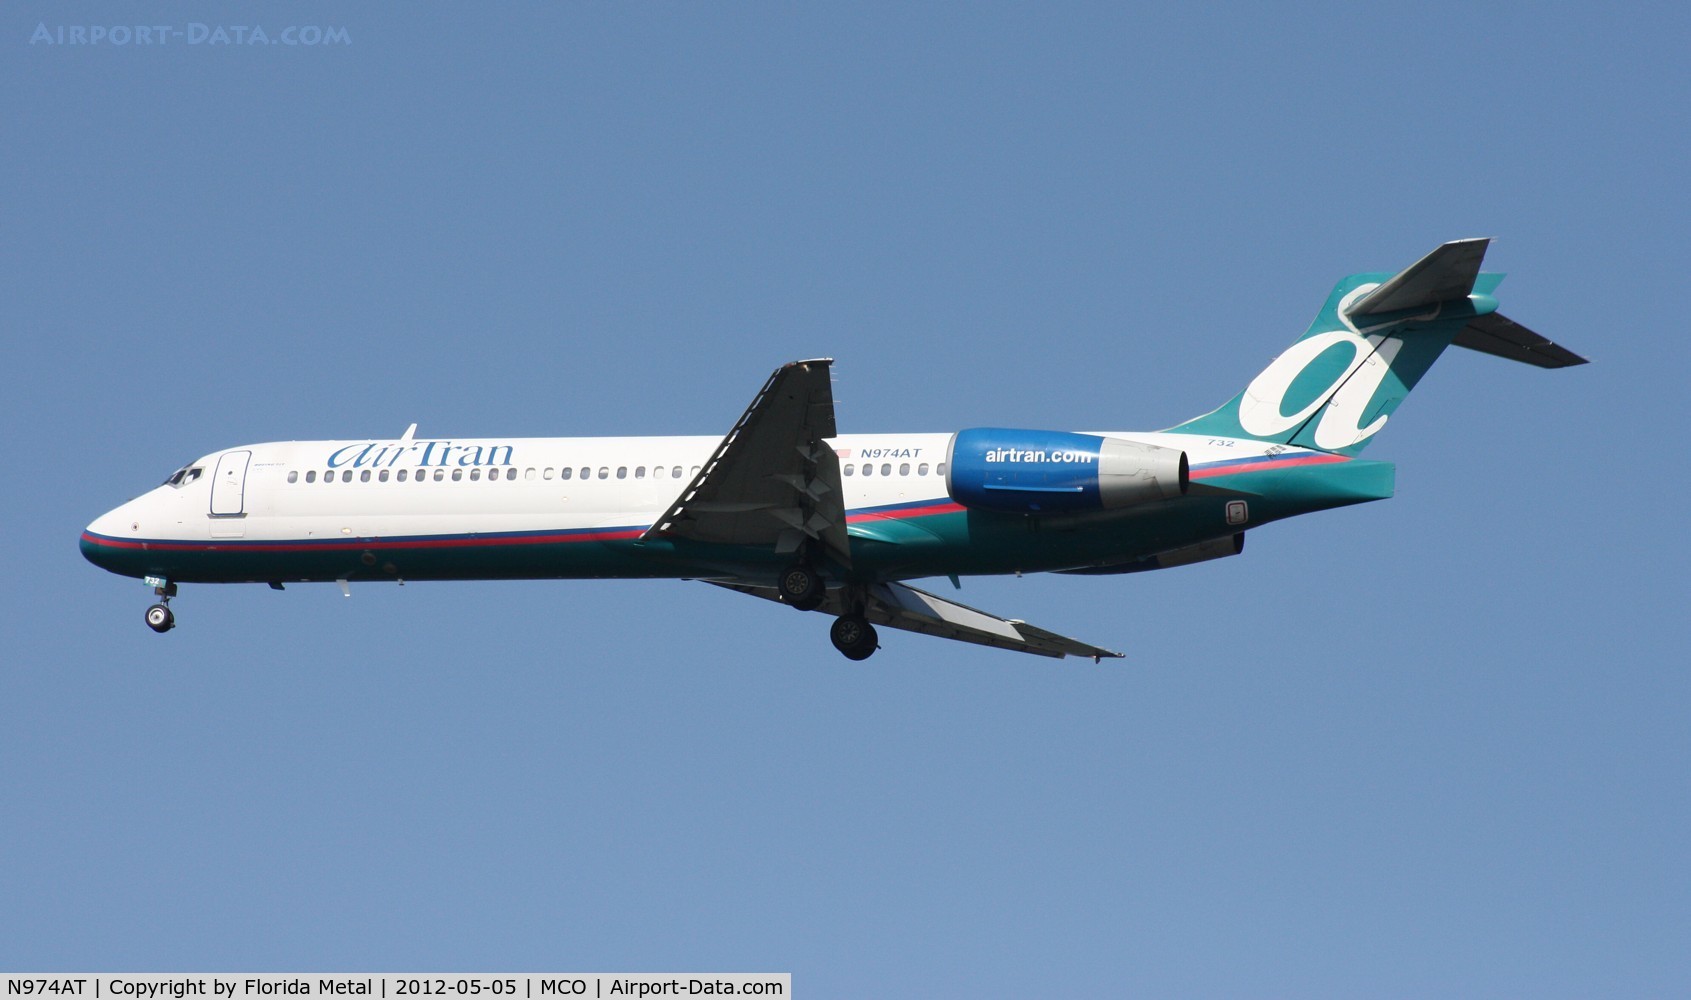 N974AT, 2002 Boeing 717-200 C/N 55034, Air Tran 717